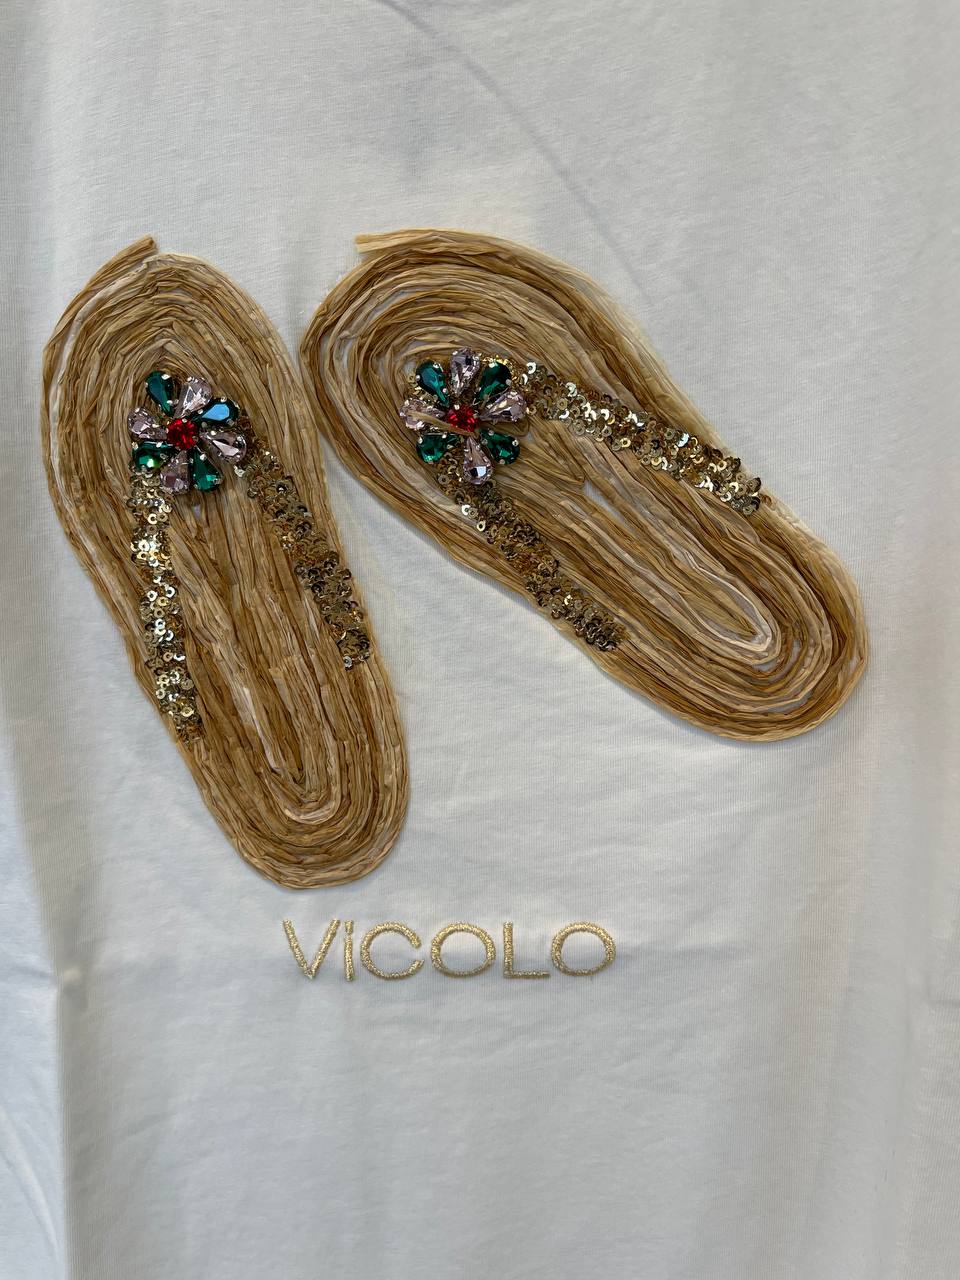 Итальянская одежда, бренд Vicolo, арт. 73268302